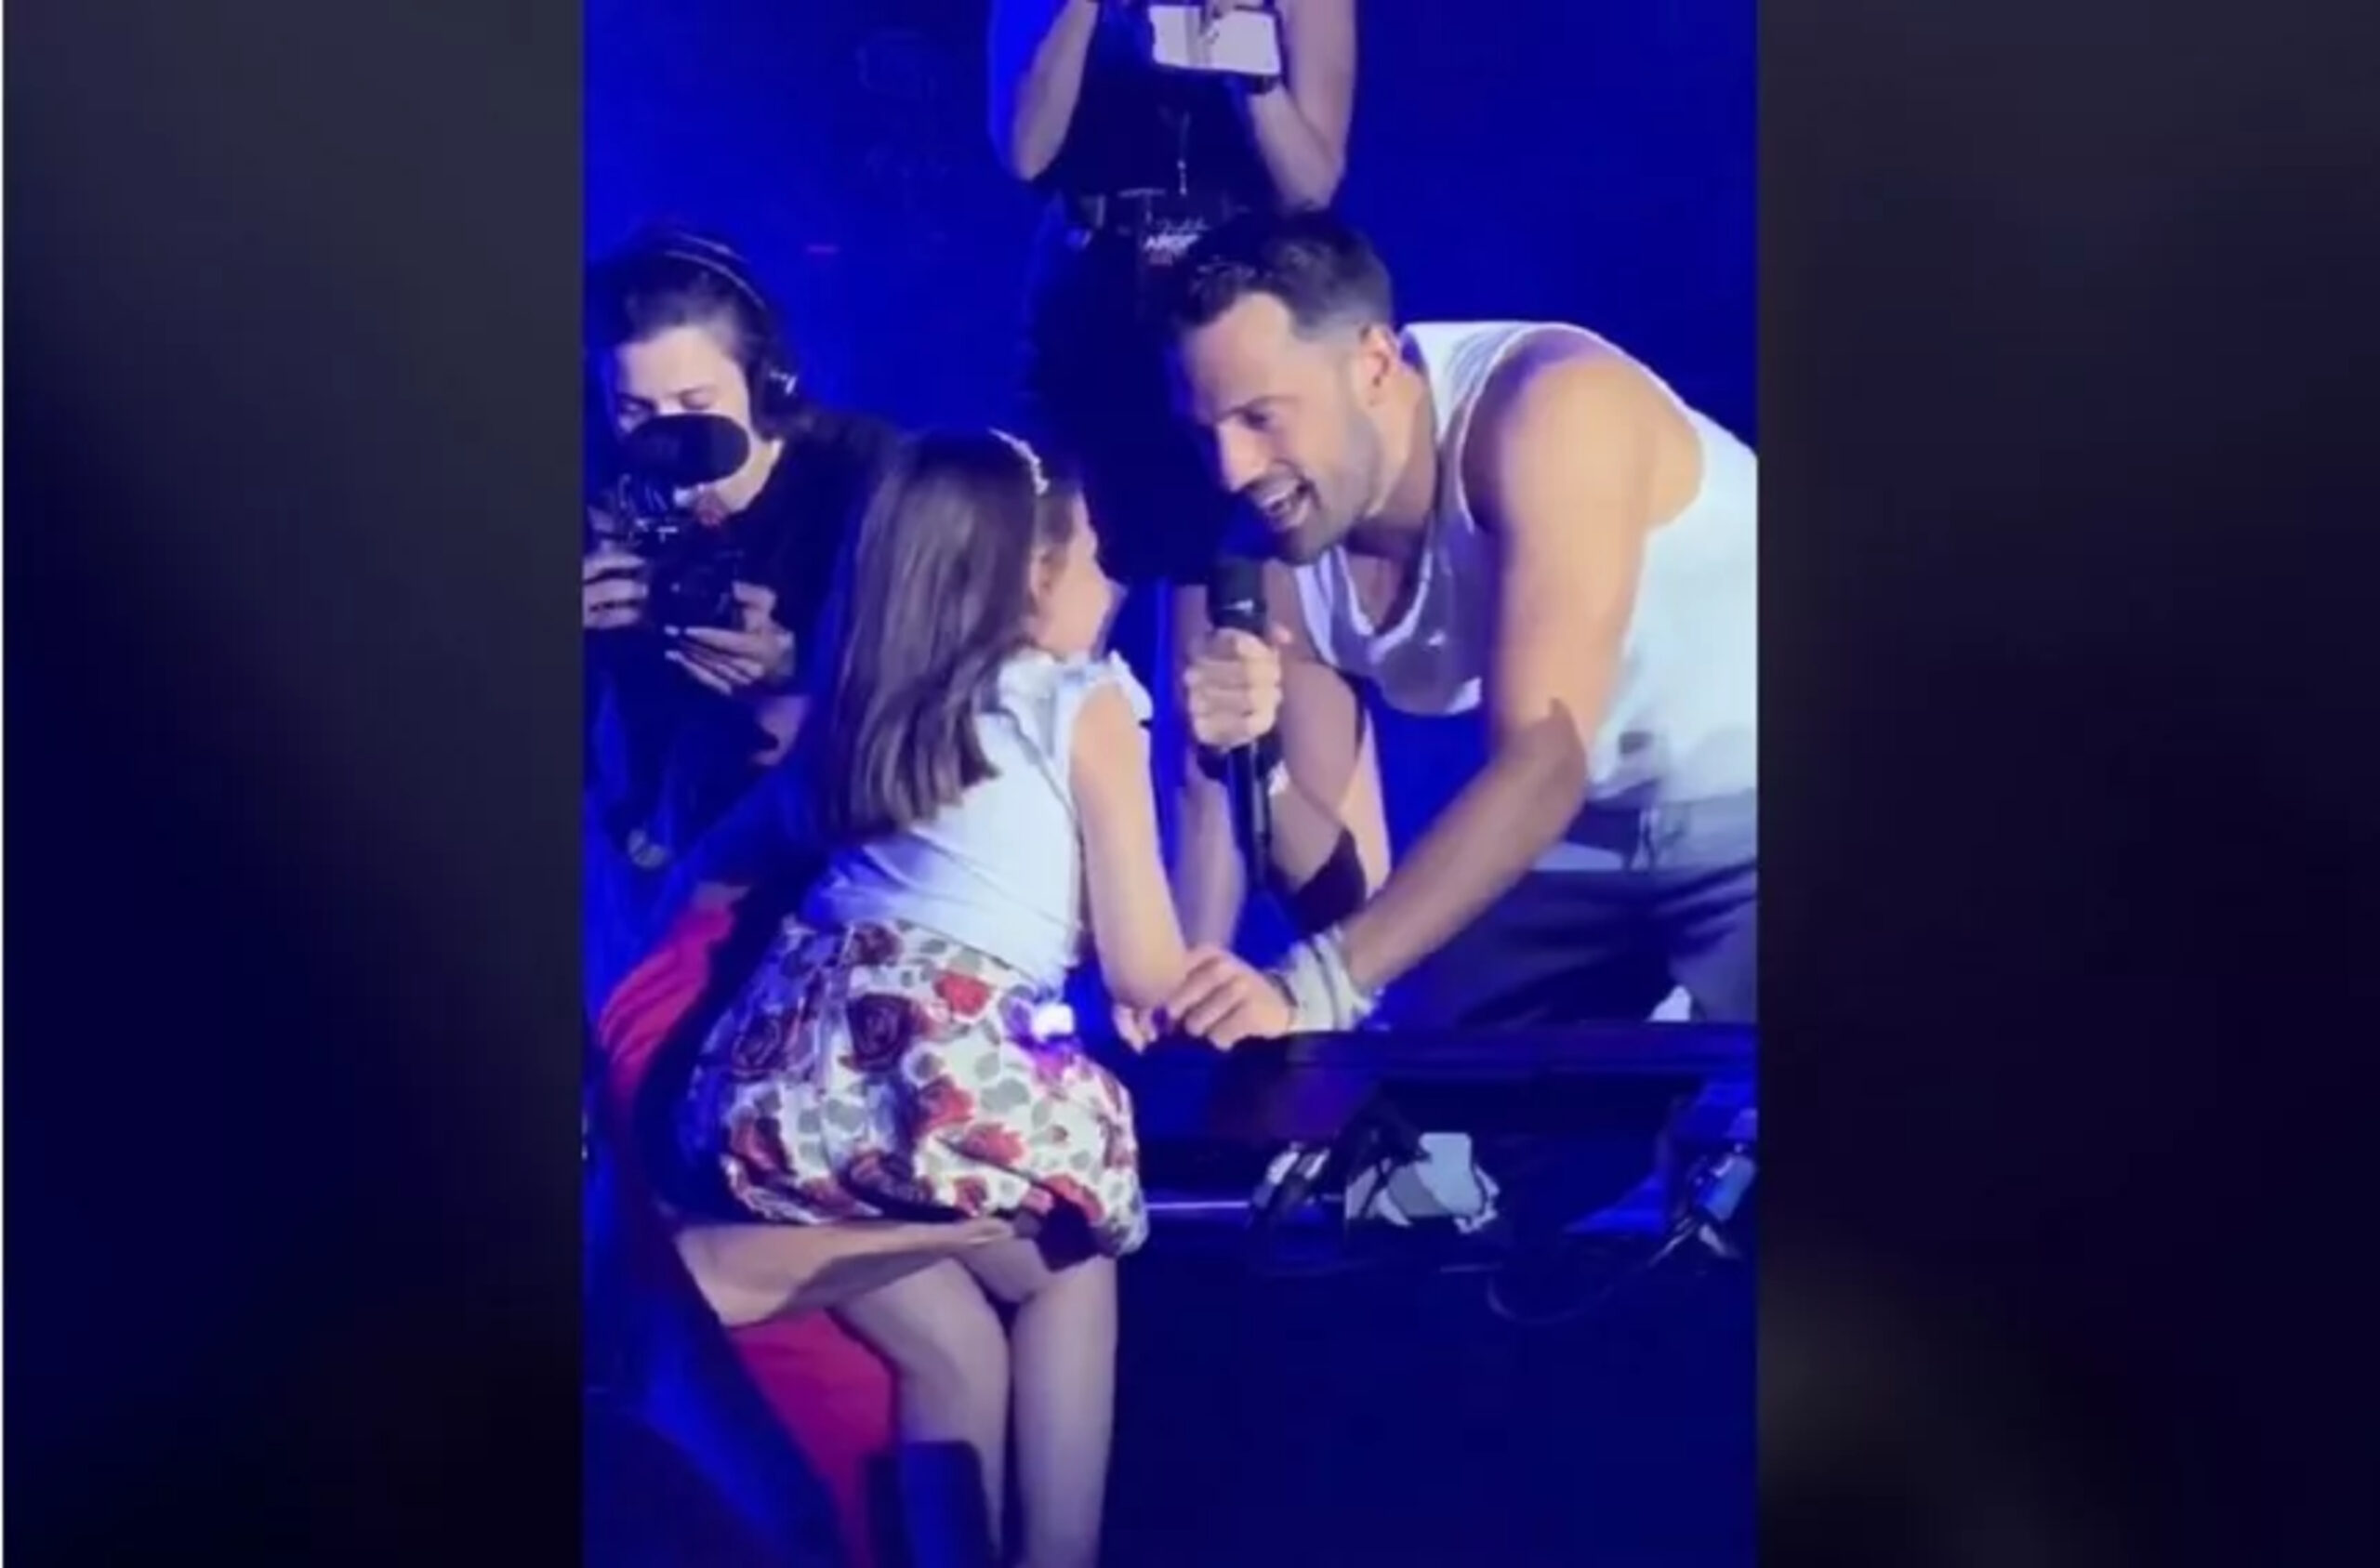 Συγκινητική στιγμή: Ο Αργυρός τραγούδησε για ένα κοριτσάκι με κινητικά προβλήματα κρατώντας το χέρι του